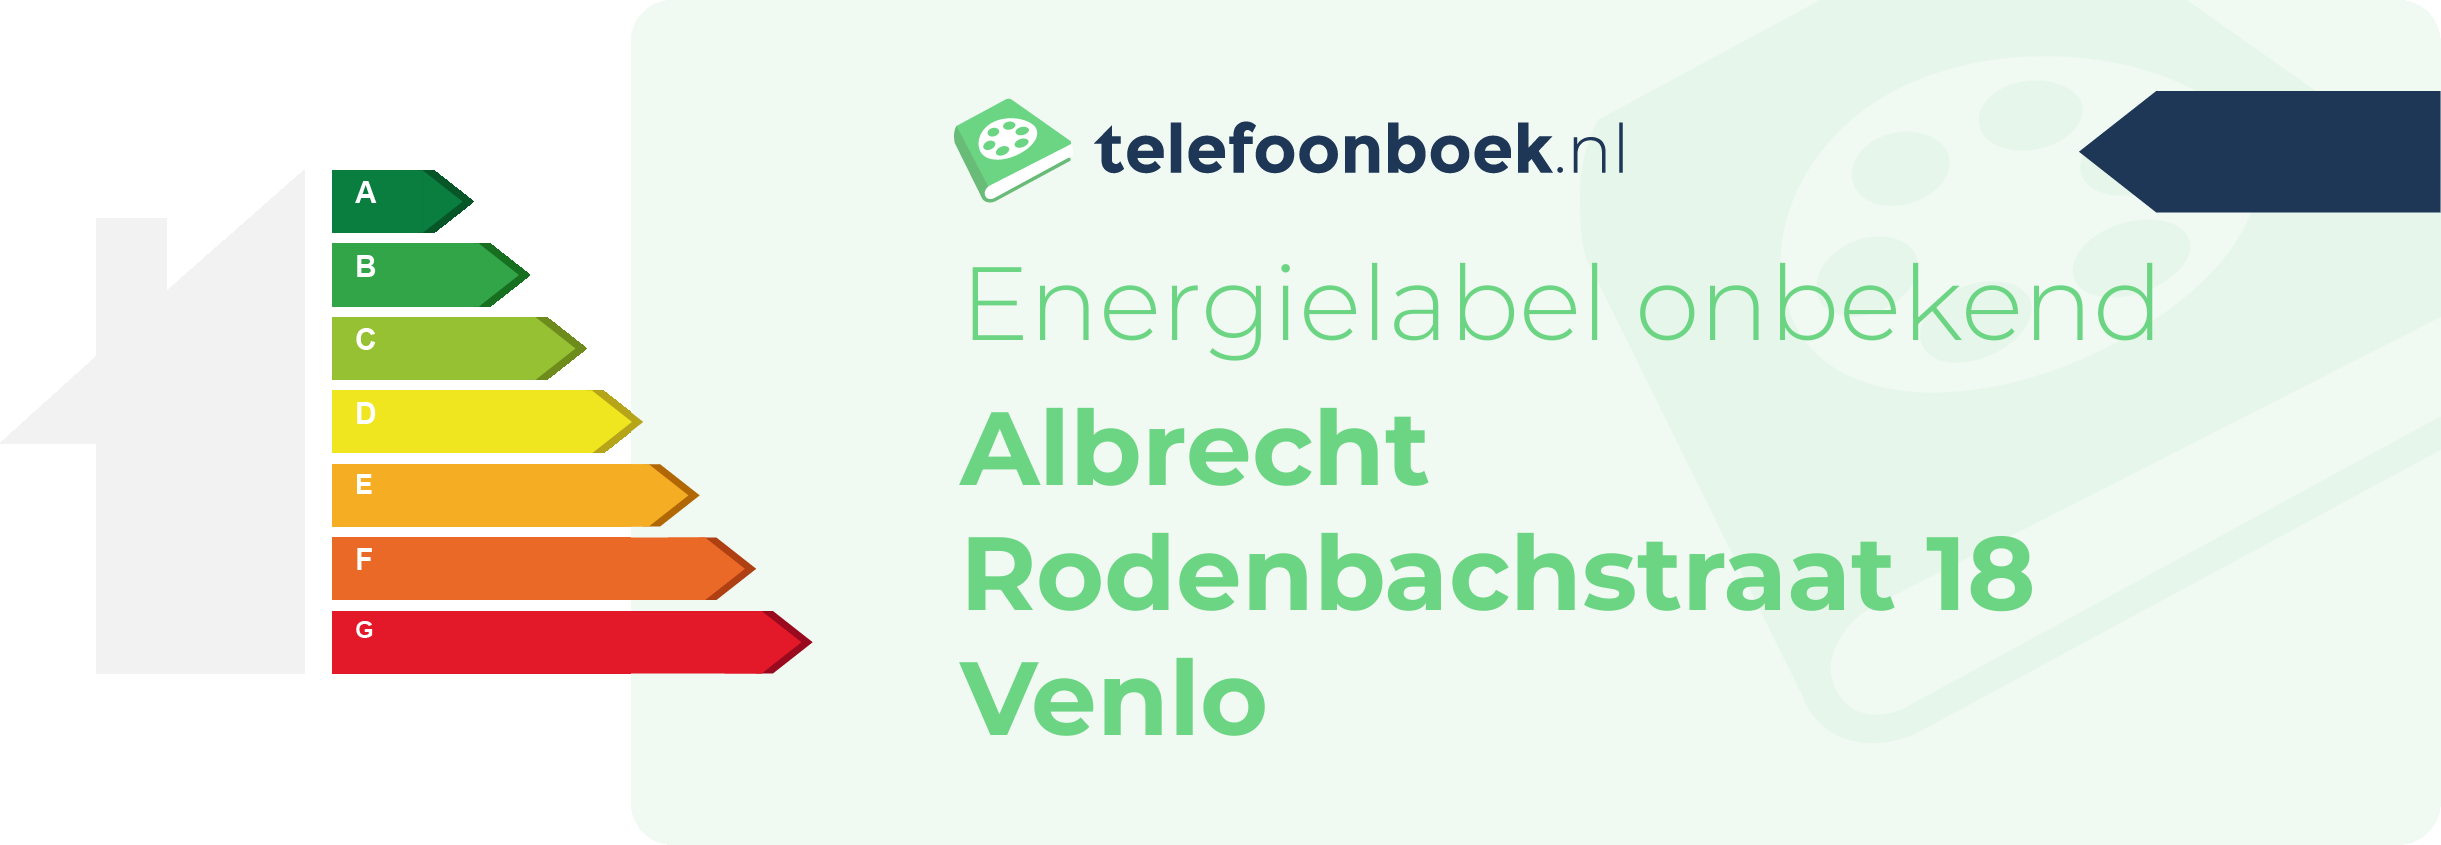 Energielabel Albrecht Rodenbachstraat 18 Venlo